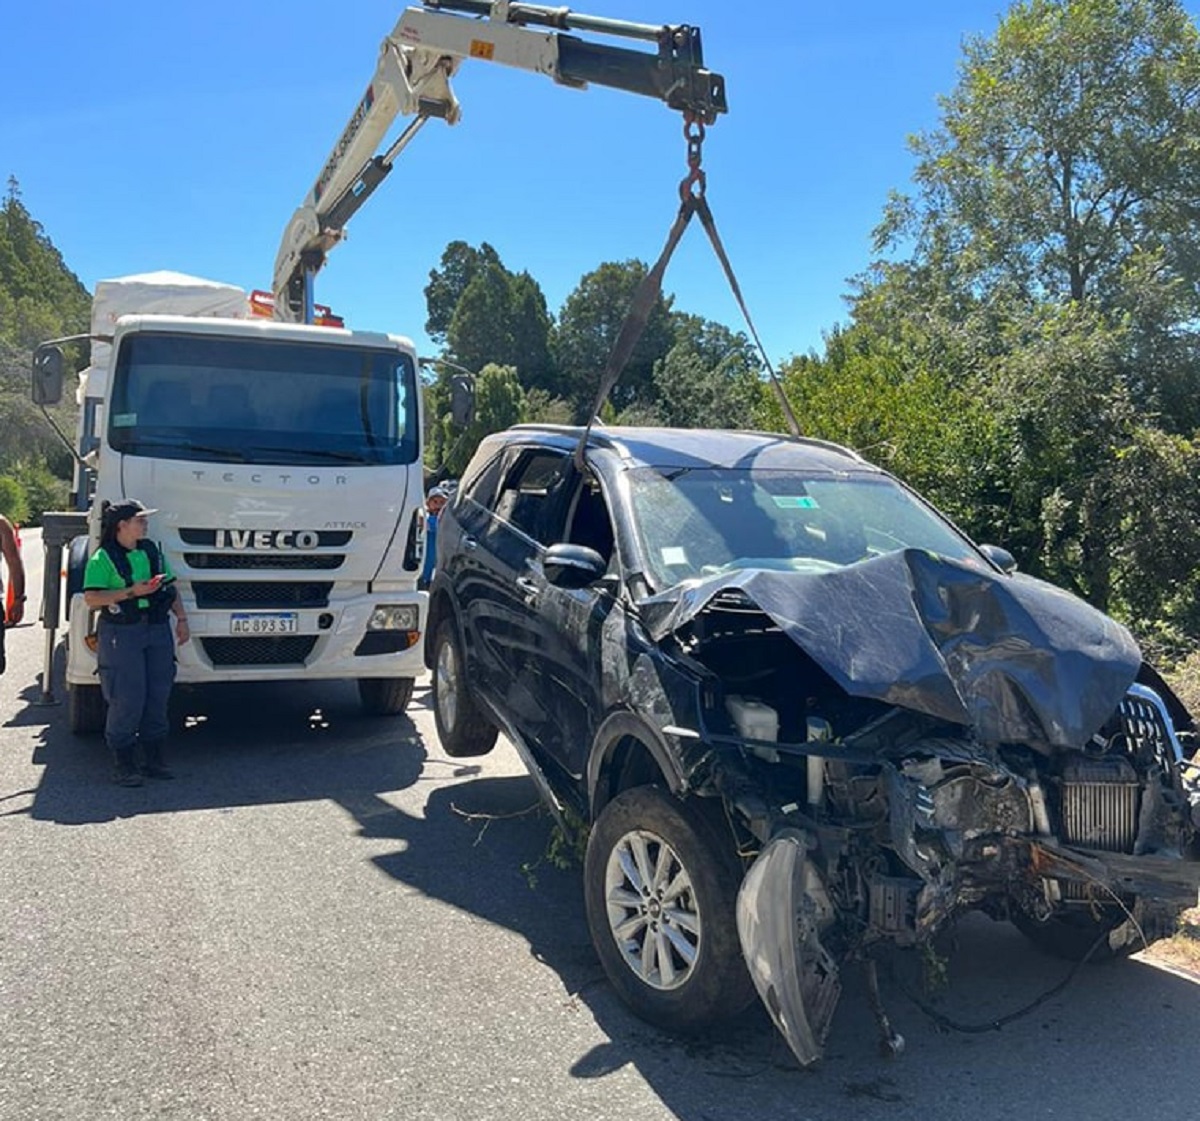 La familia chilena viajaba en una camioneta Kia Sorento cuando desbarrancó. Foto: https://www.facebook.com/fmdellagoradio